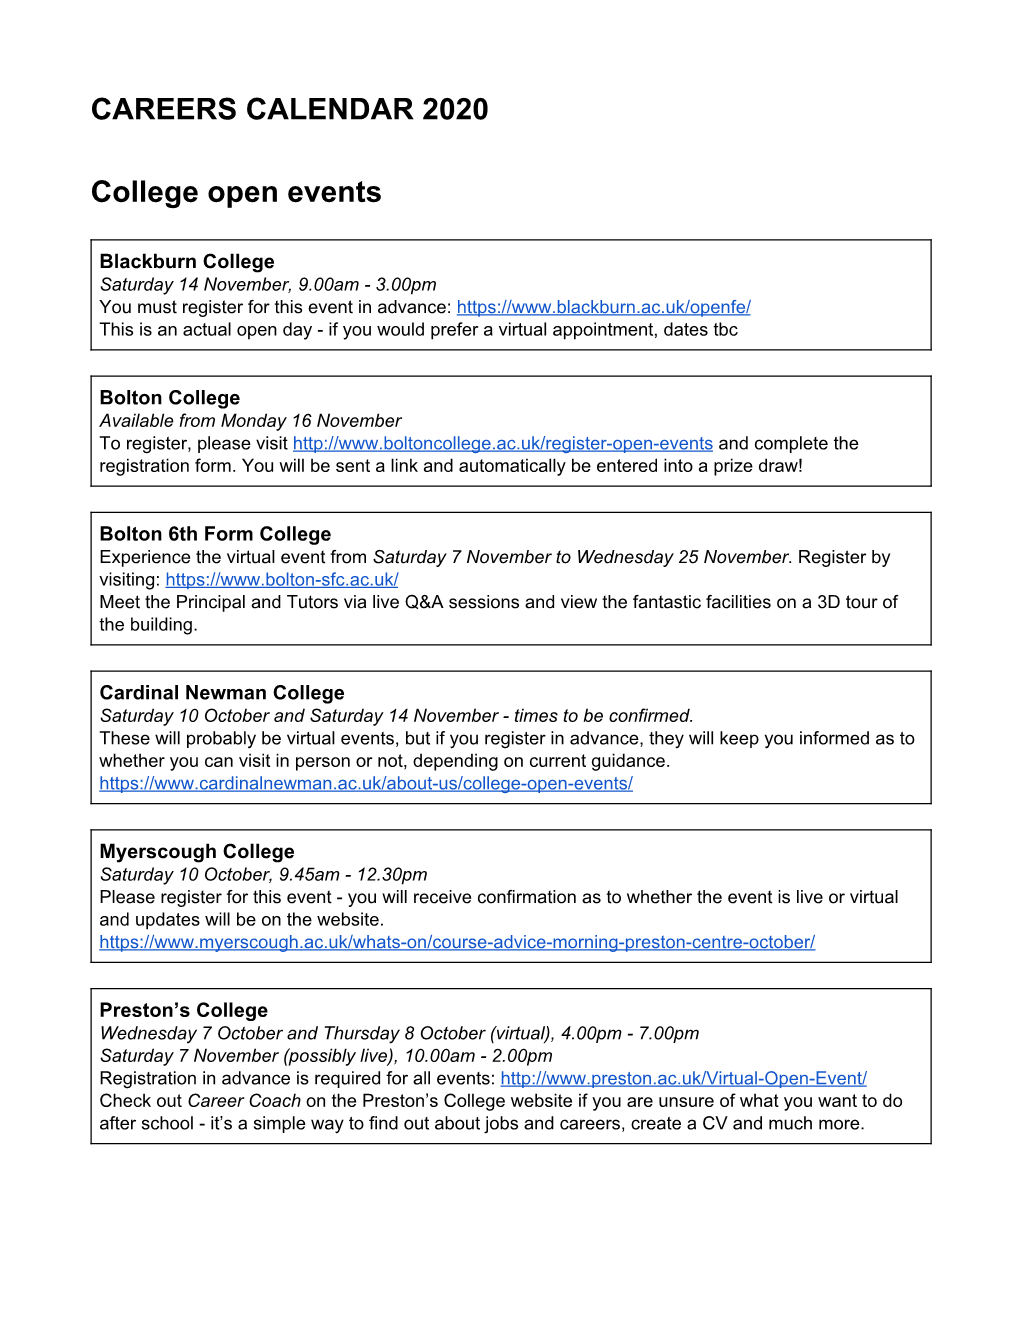 CAREERS CALENDAR 2020 College Open Events